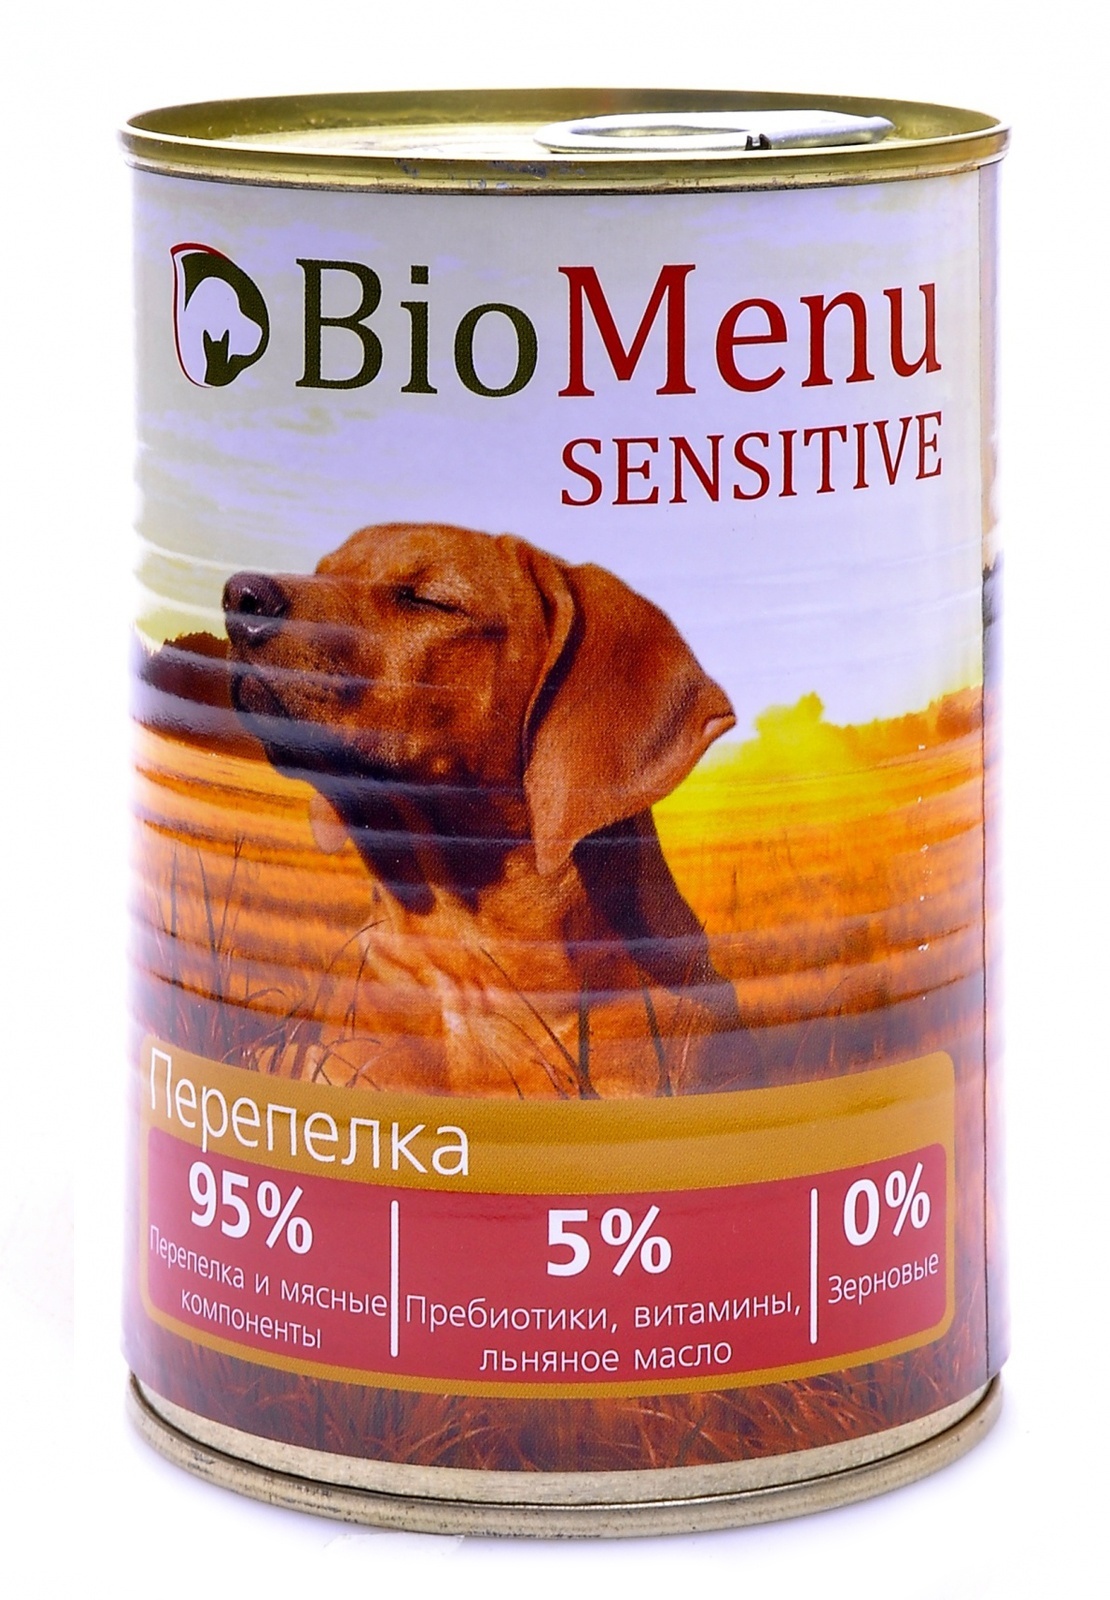 BioMenu BioMenu гипоаллергенные консервы для собак перепелка (100 г) biomenu biomenu консервы для собак низкокалорийные с индейкой и коричневым рисом 100 г